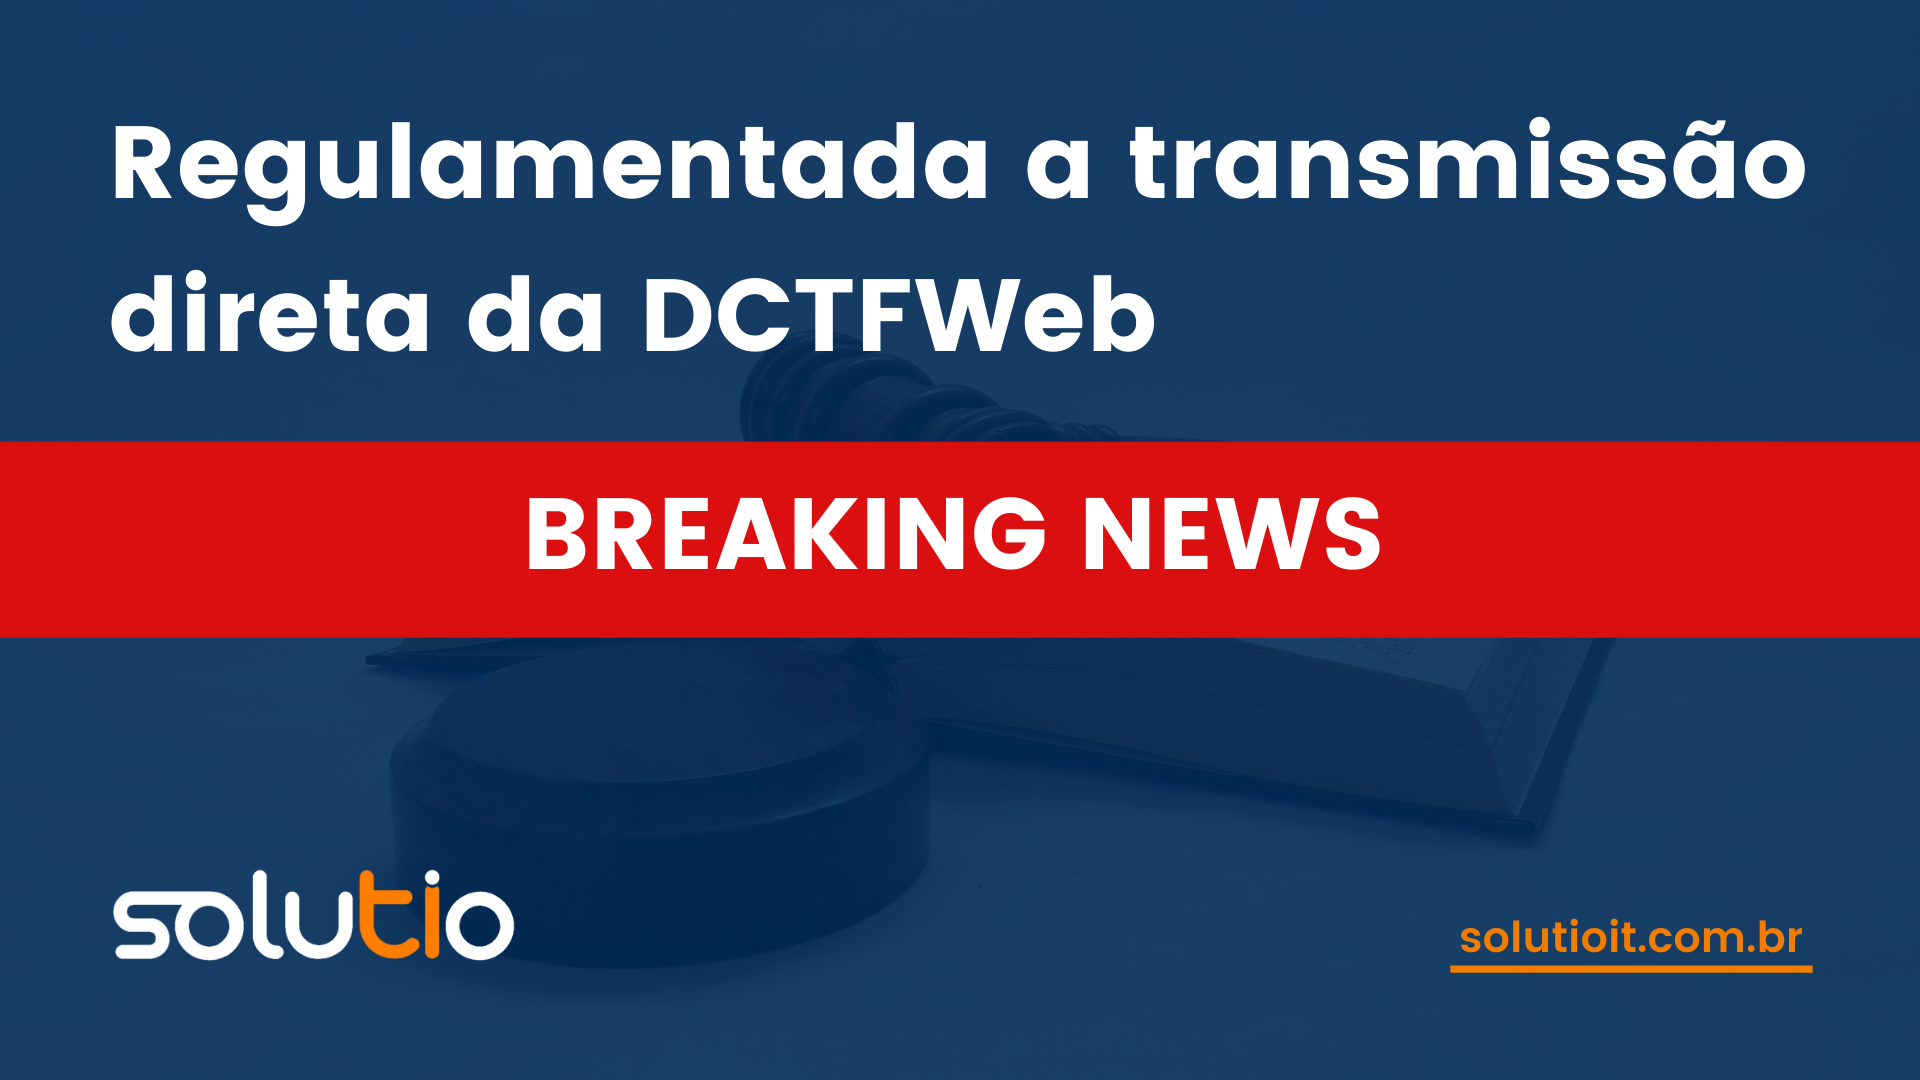 Regulamentada a transmissão direta da DCTFWeb